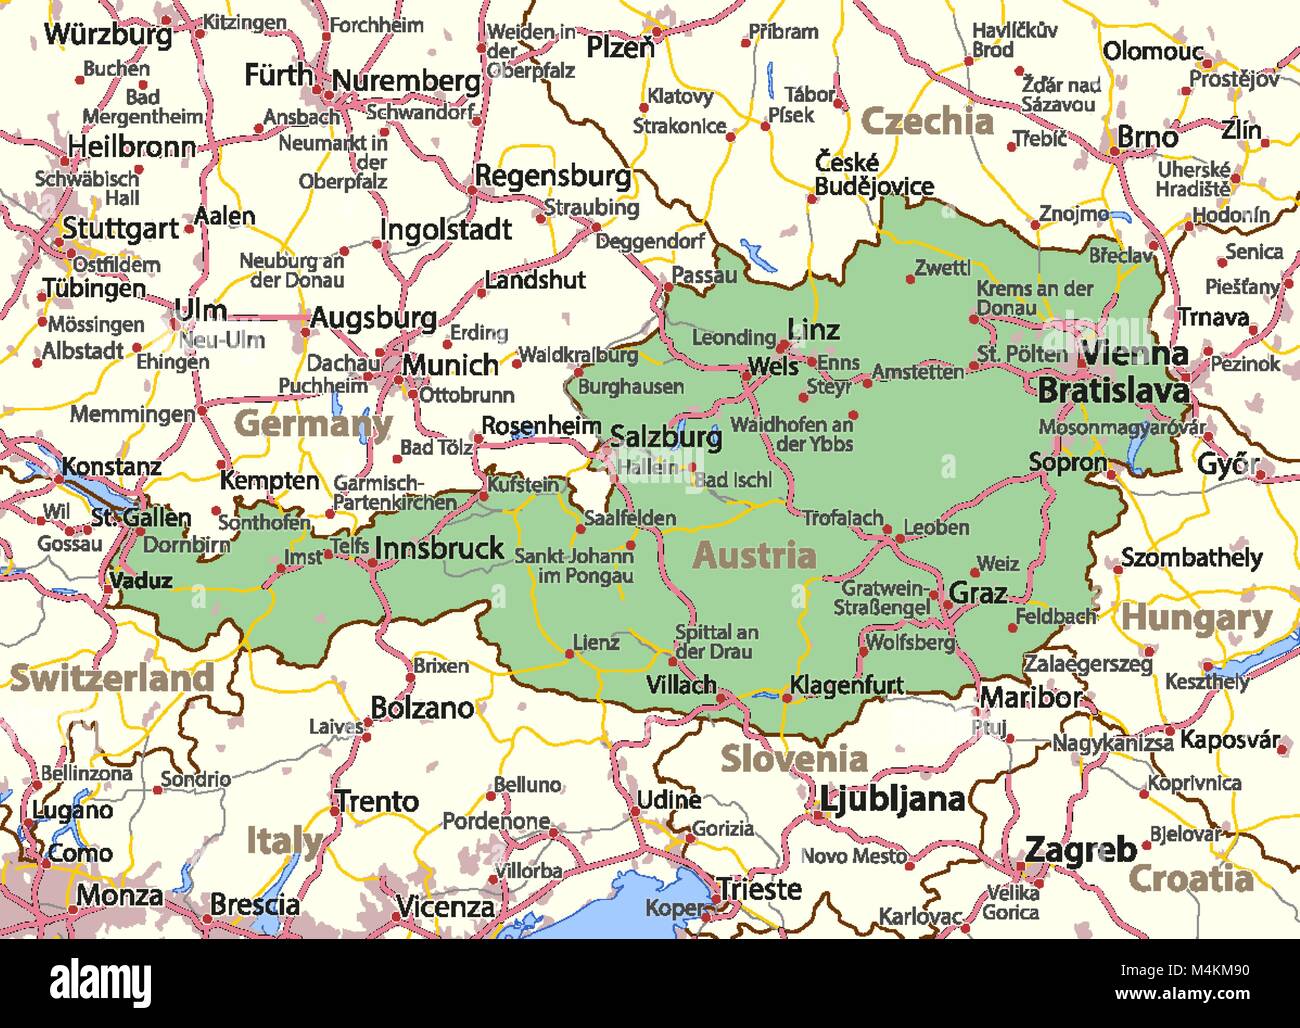 Mappa Di Austria Mostra I Confini Zone Urbane Nomi Di Localita E Strade Le Etichette In Inglese Dove Possibile Proiezione Proiezione Di Mercatore M4km90 